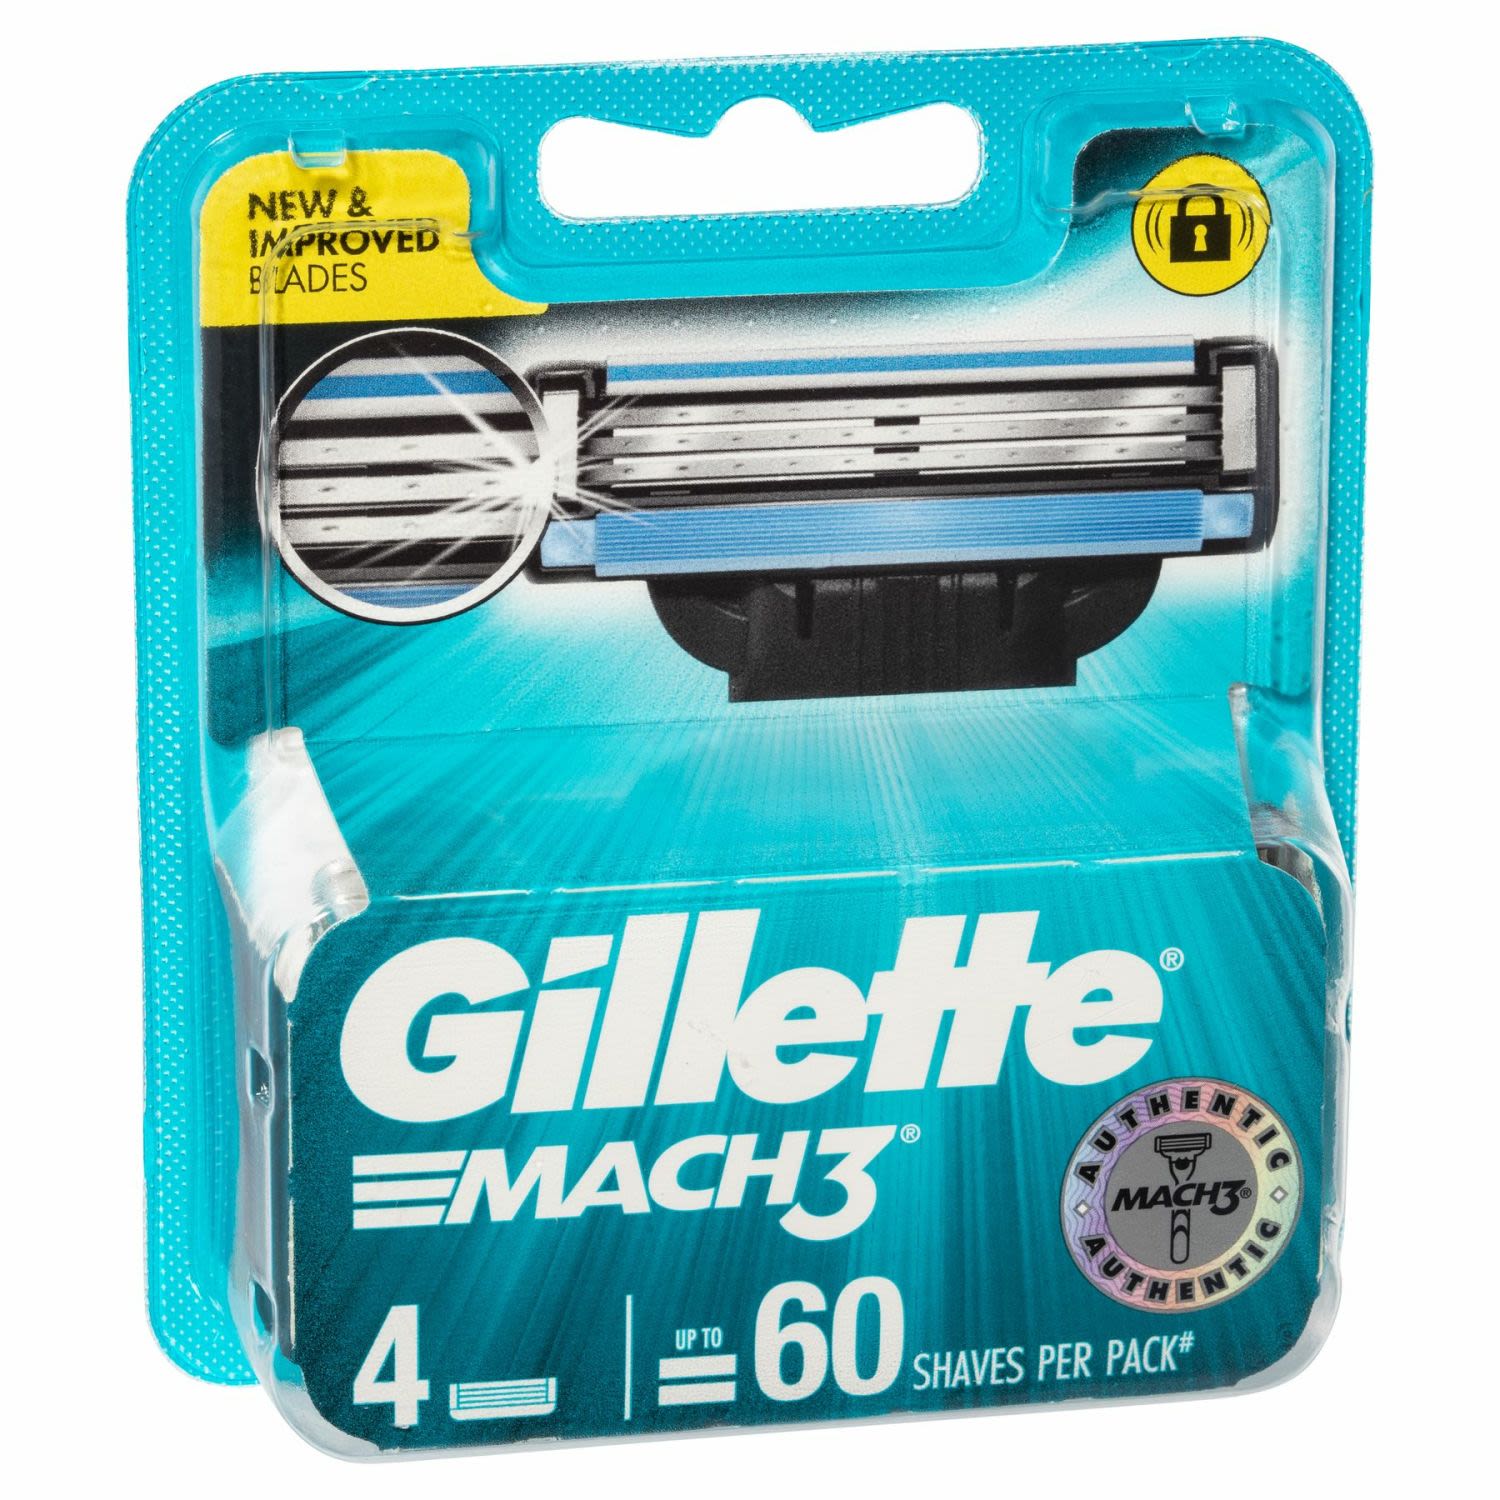 Gillette Mach3 Cartridges, 4 Each